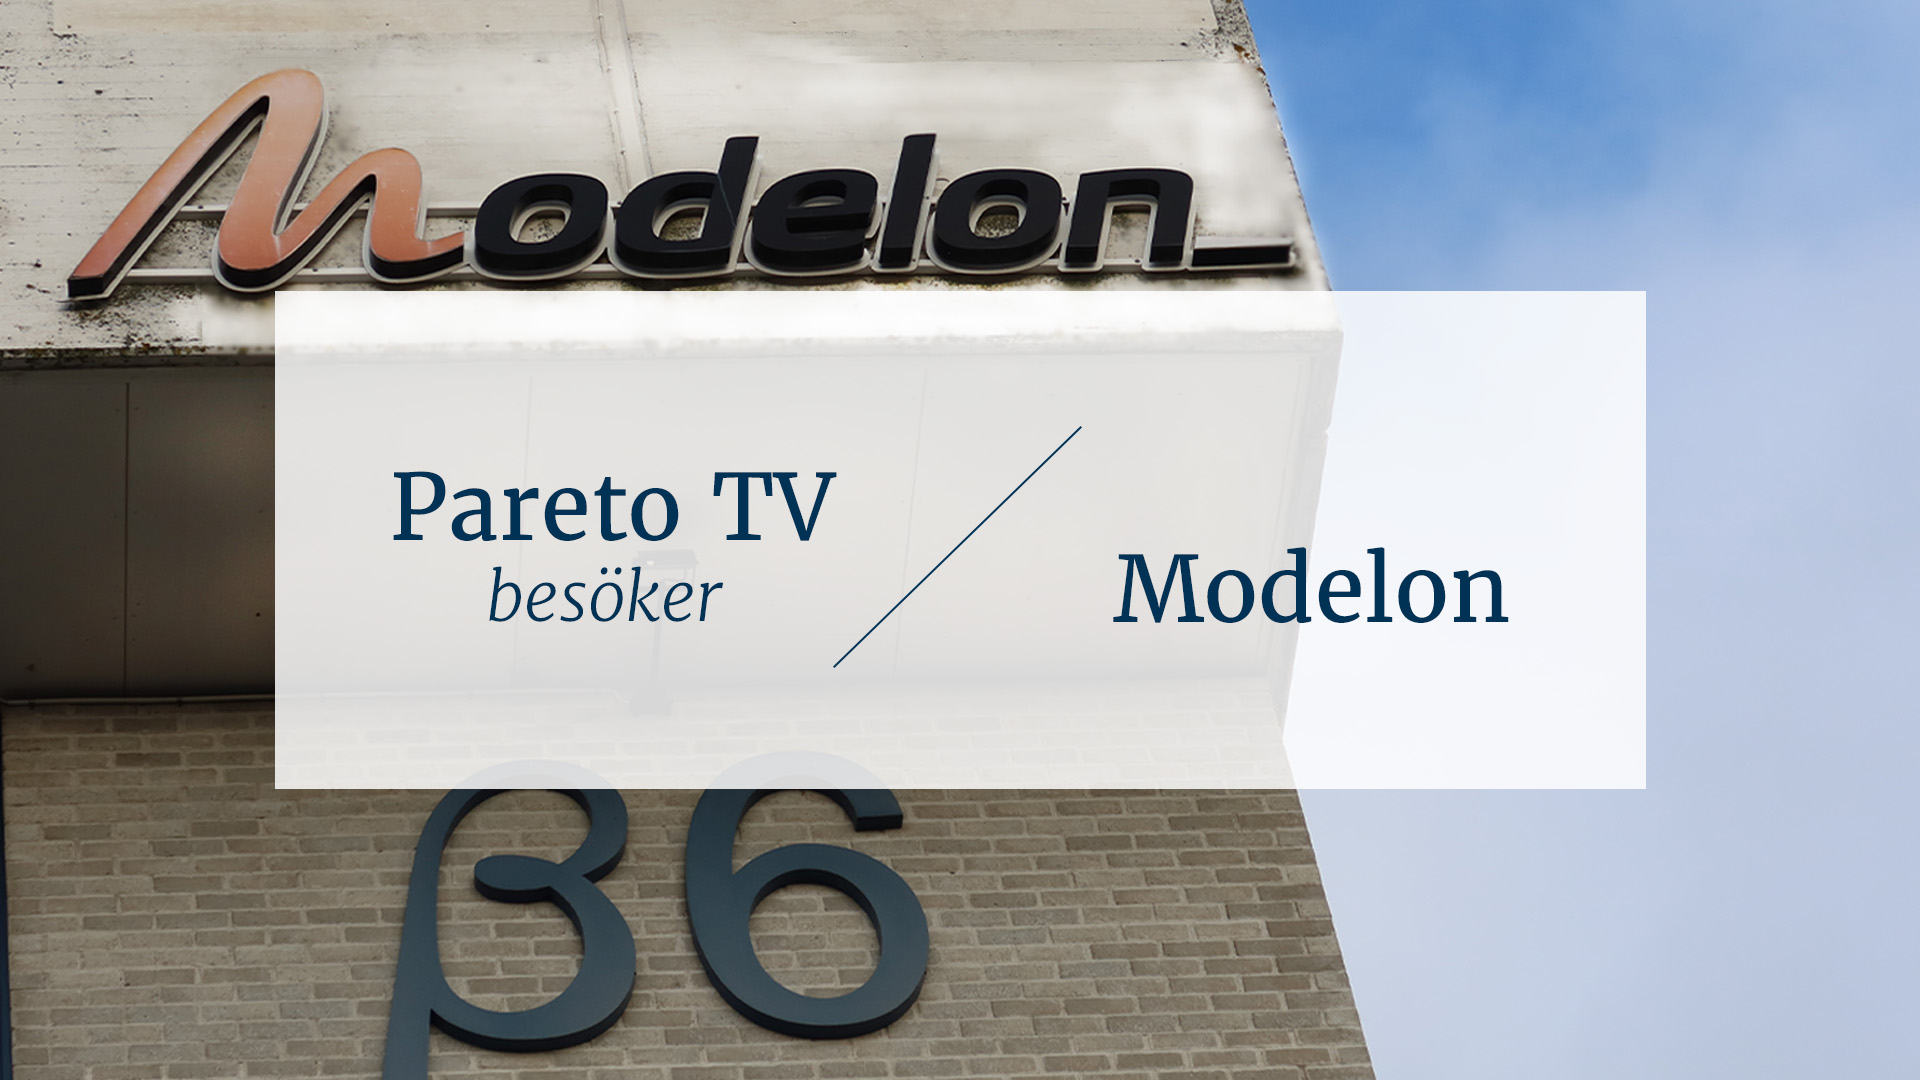 Pareto TV besöker Modelon: 